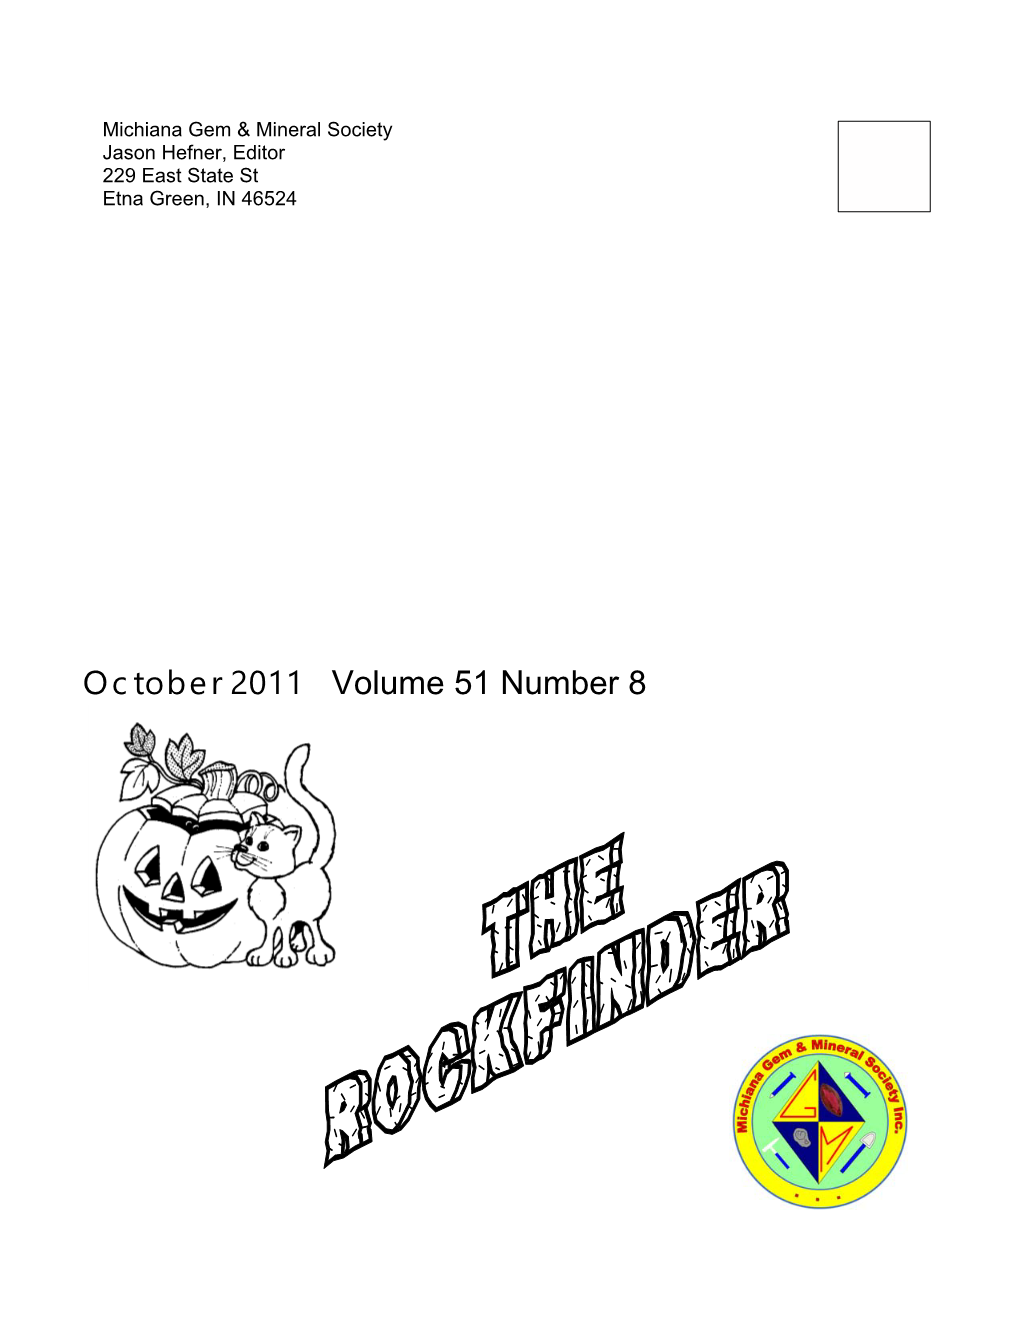 October 2011 Volume 51 Number 8